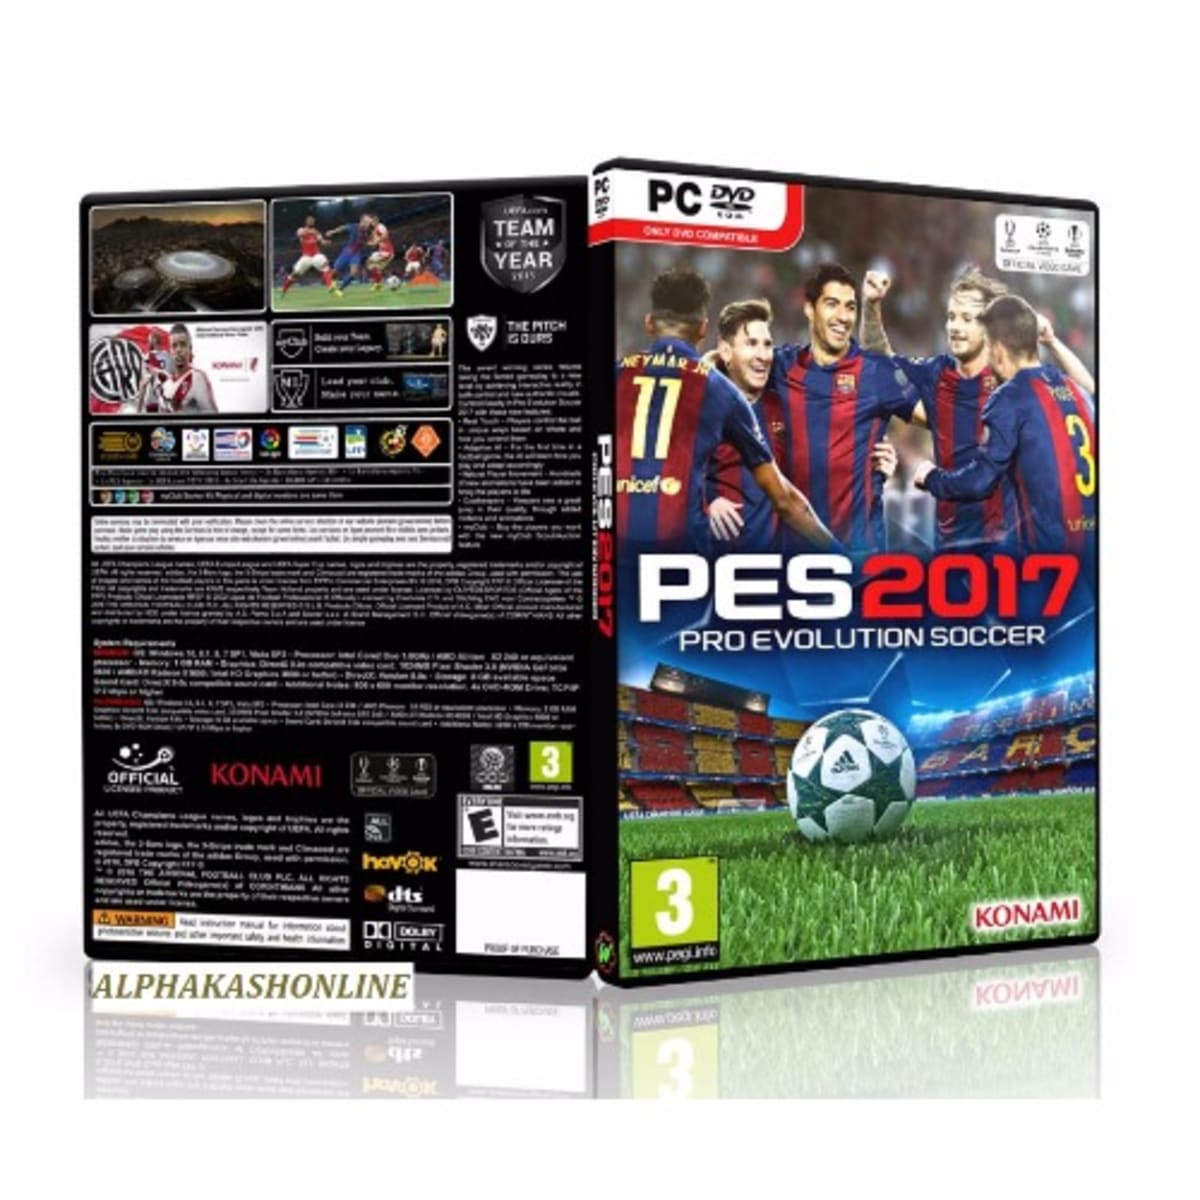 PES 2017 / Pro Evolution Soccer 2017 torrent download for PC